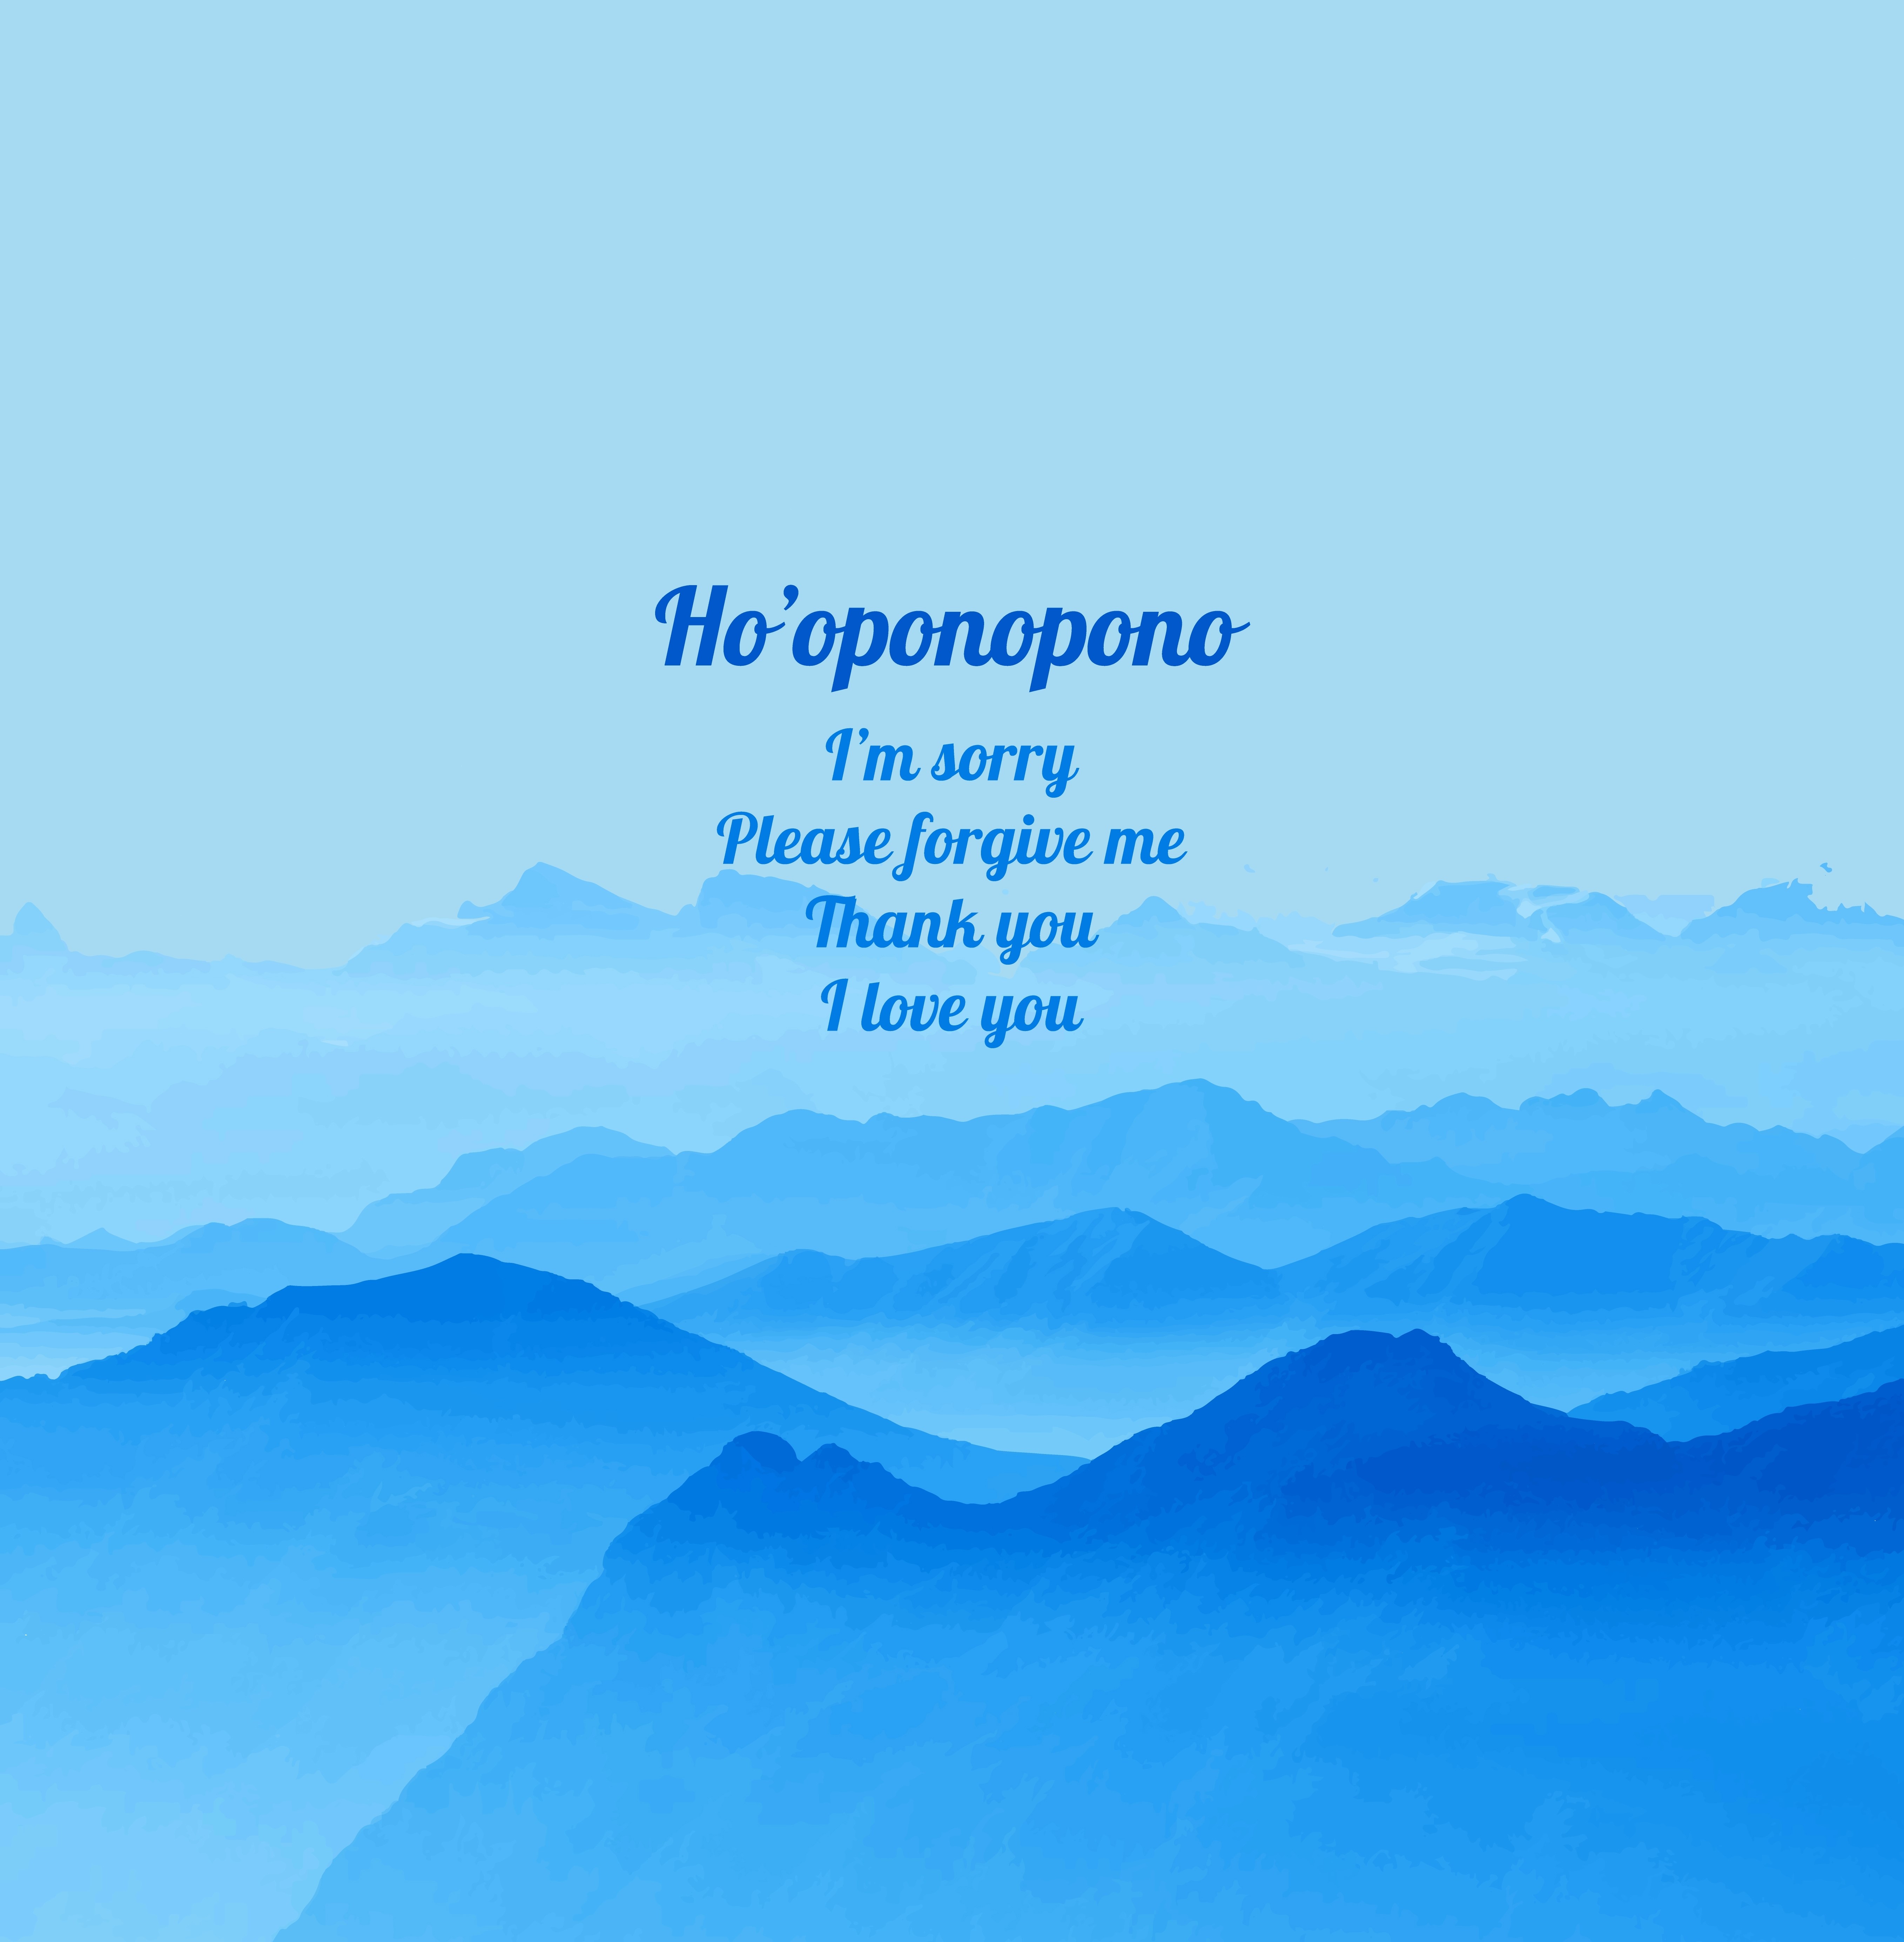 The Ho'oponopono Prayer and Mantra